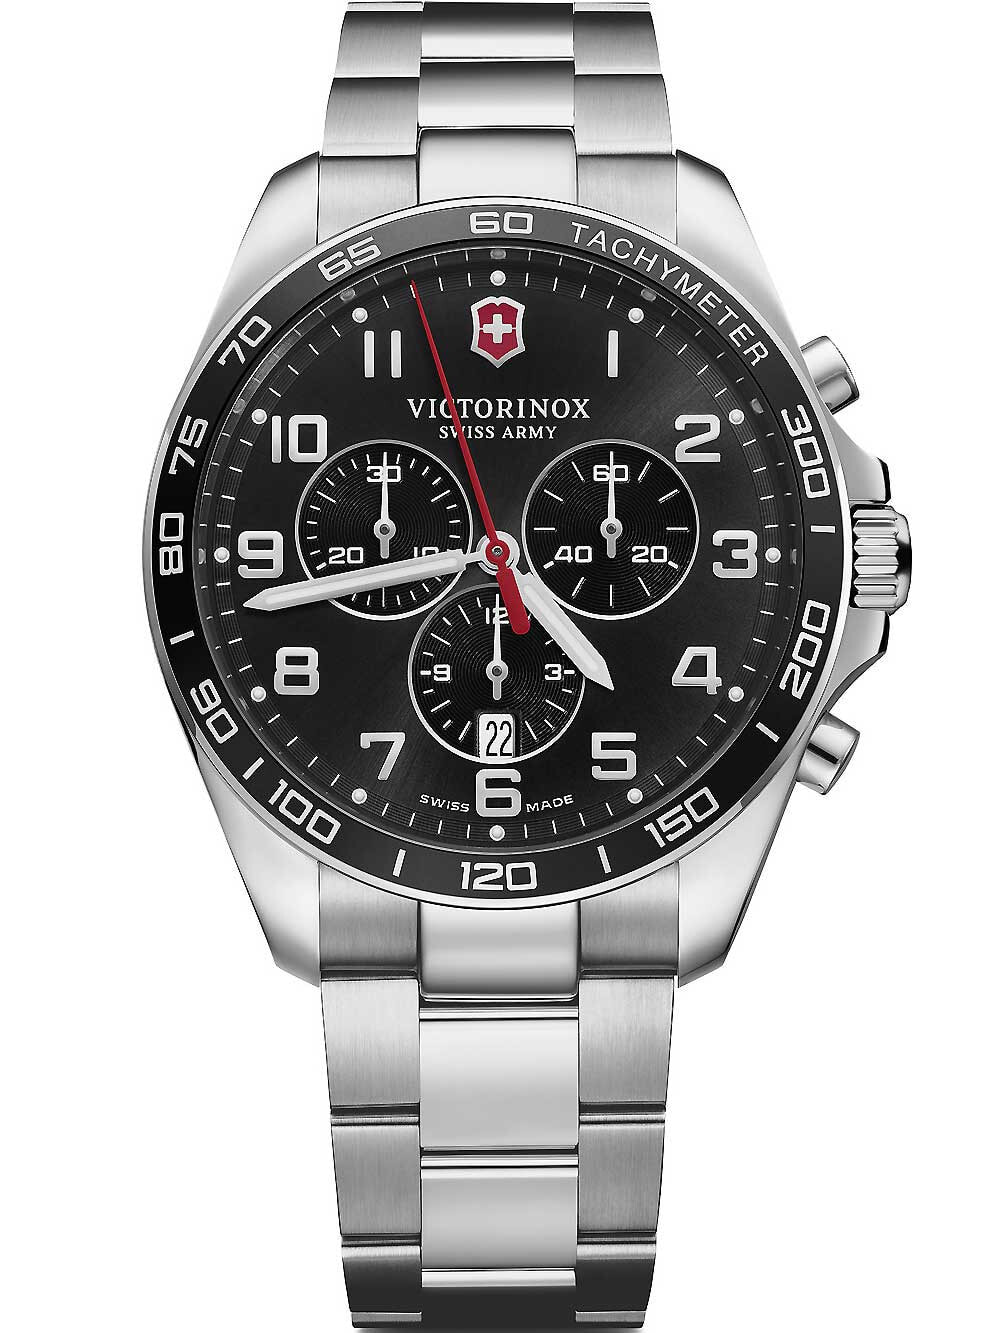 Мужские наручные часы с серебристым браслетом Victorinox 241899 Fieldforce chronograph 42mm 10ATM